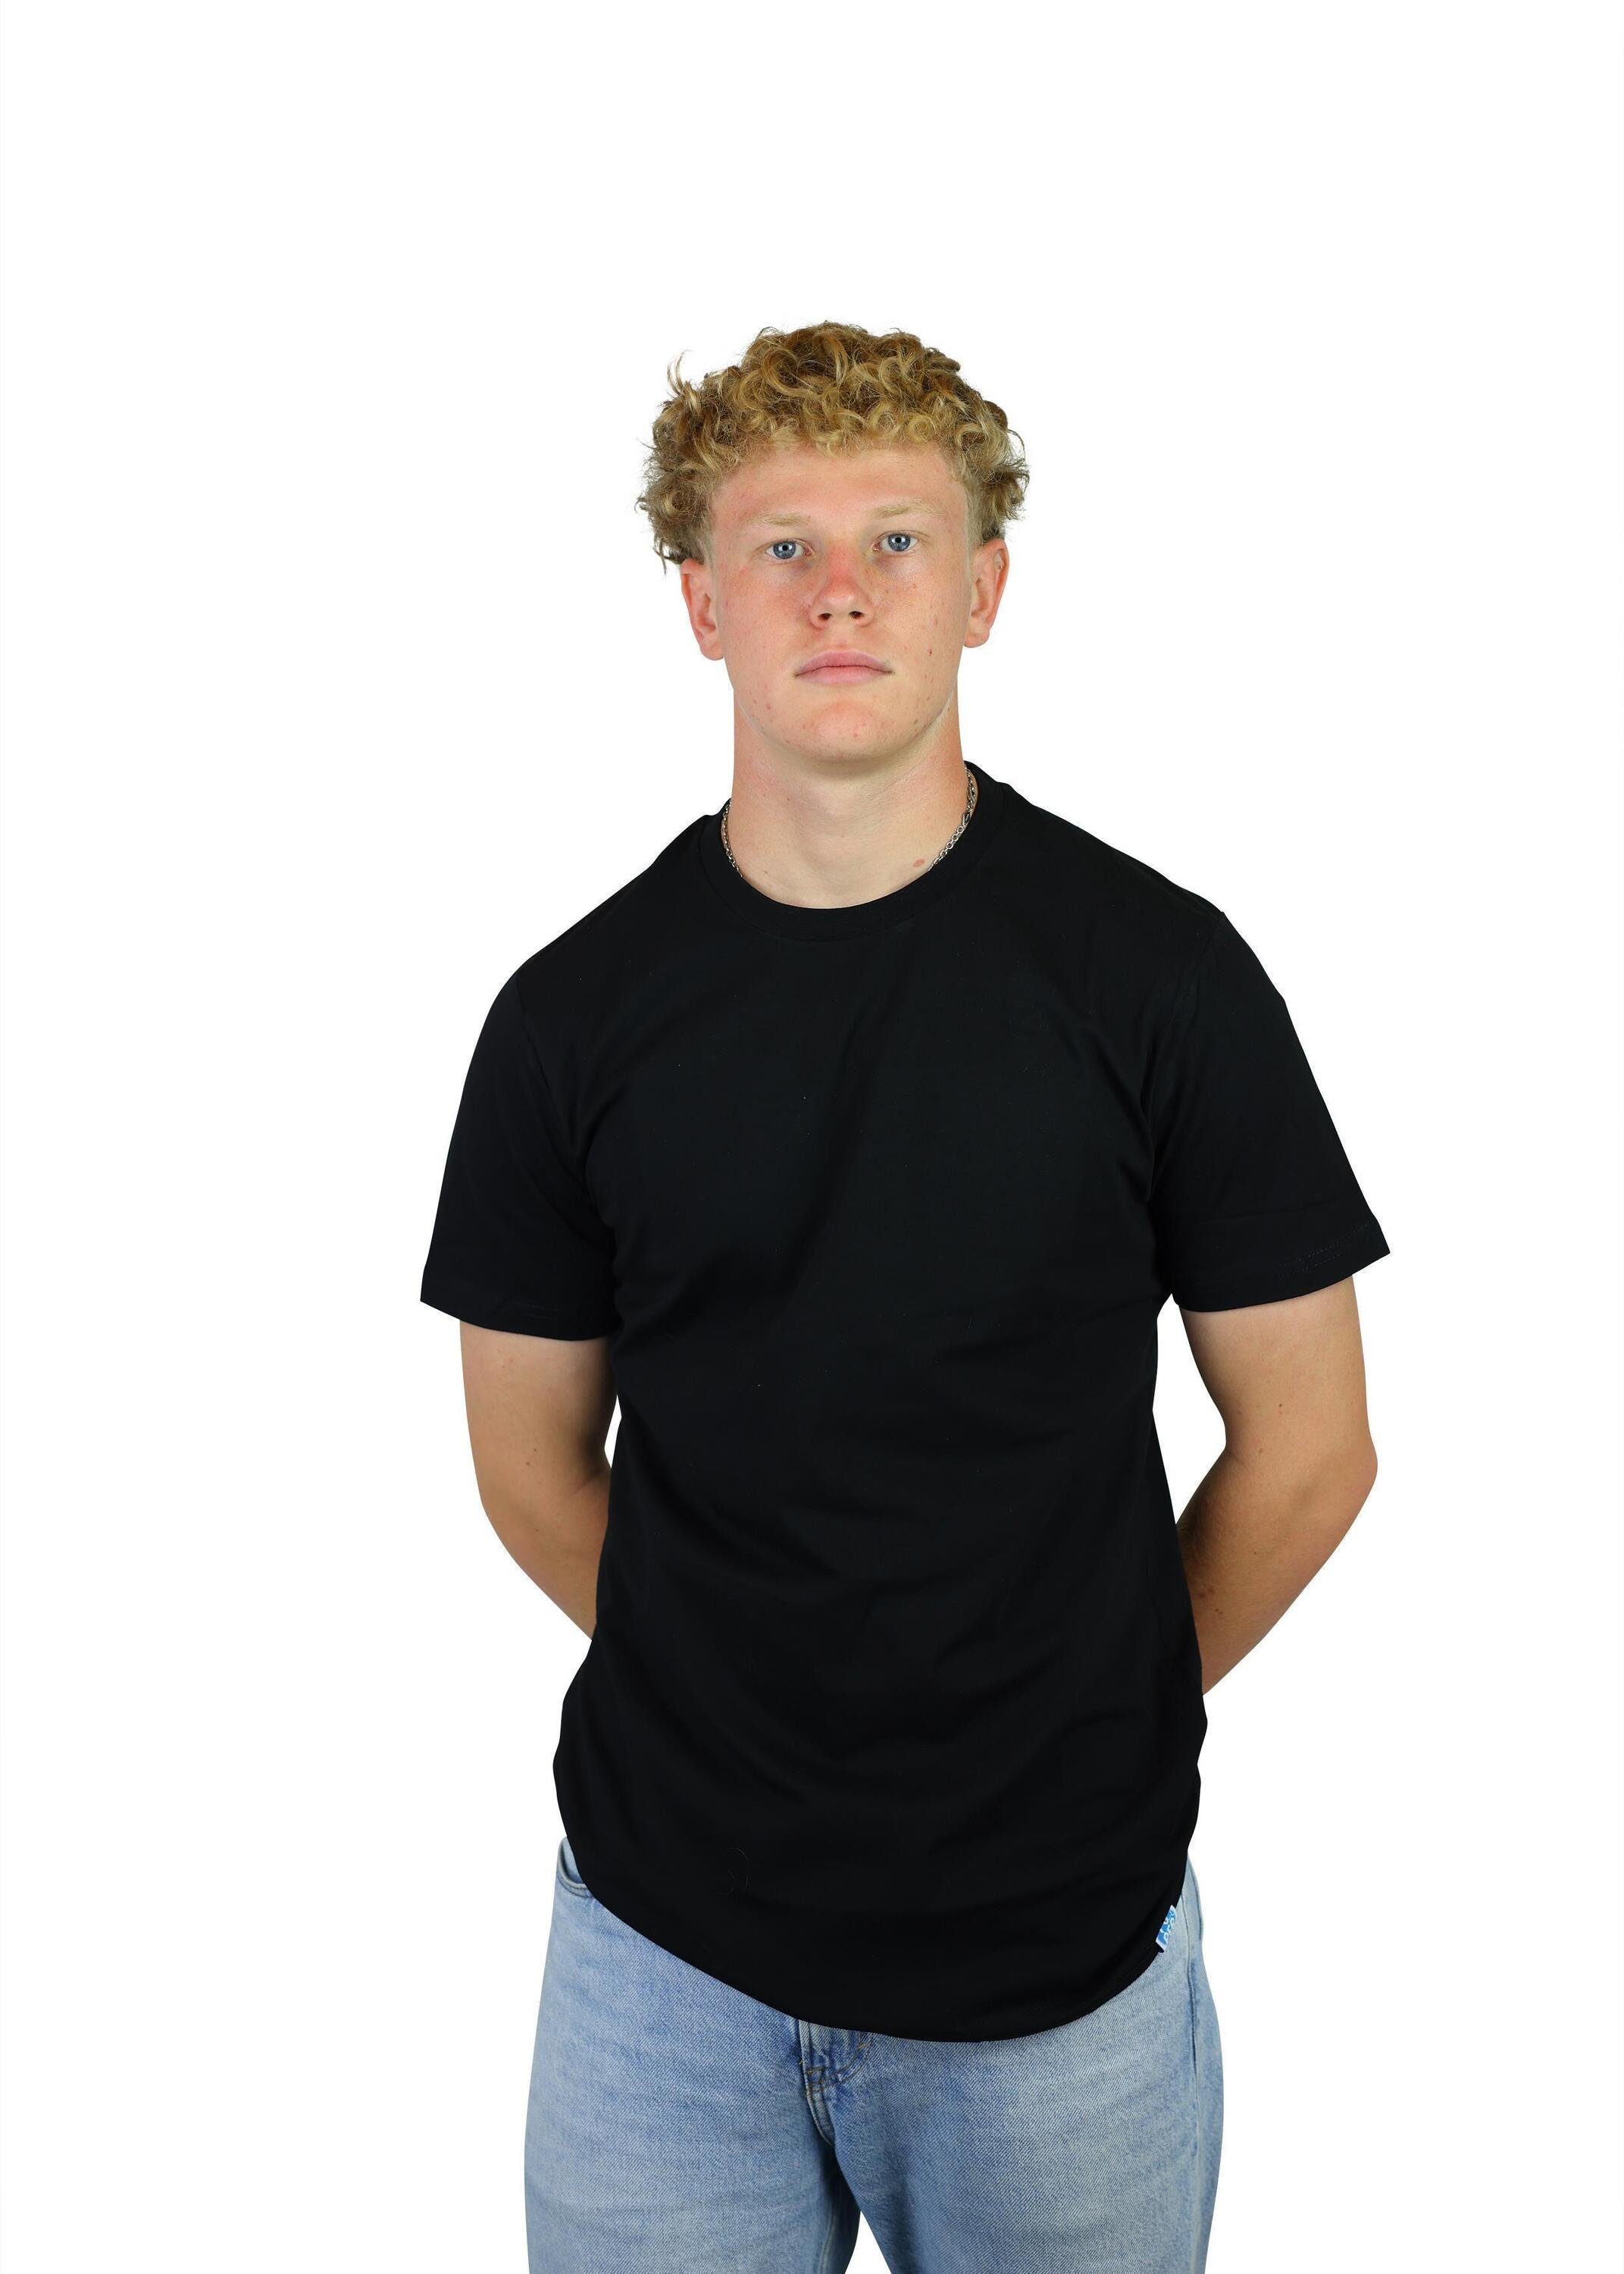 Karl Kinder, FuPer für aus Fußball, Baumwolle, Jugend T-Shirt Black